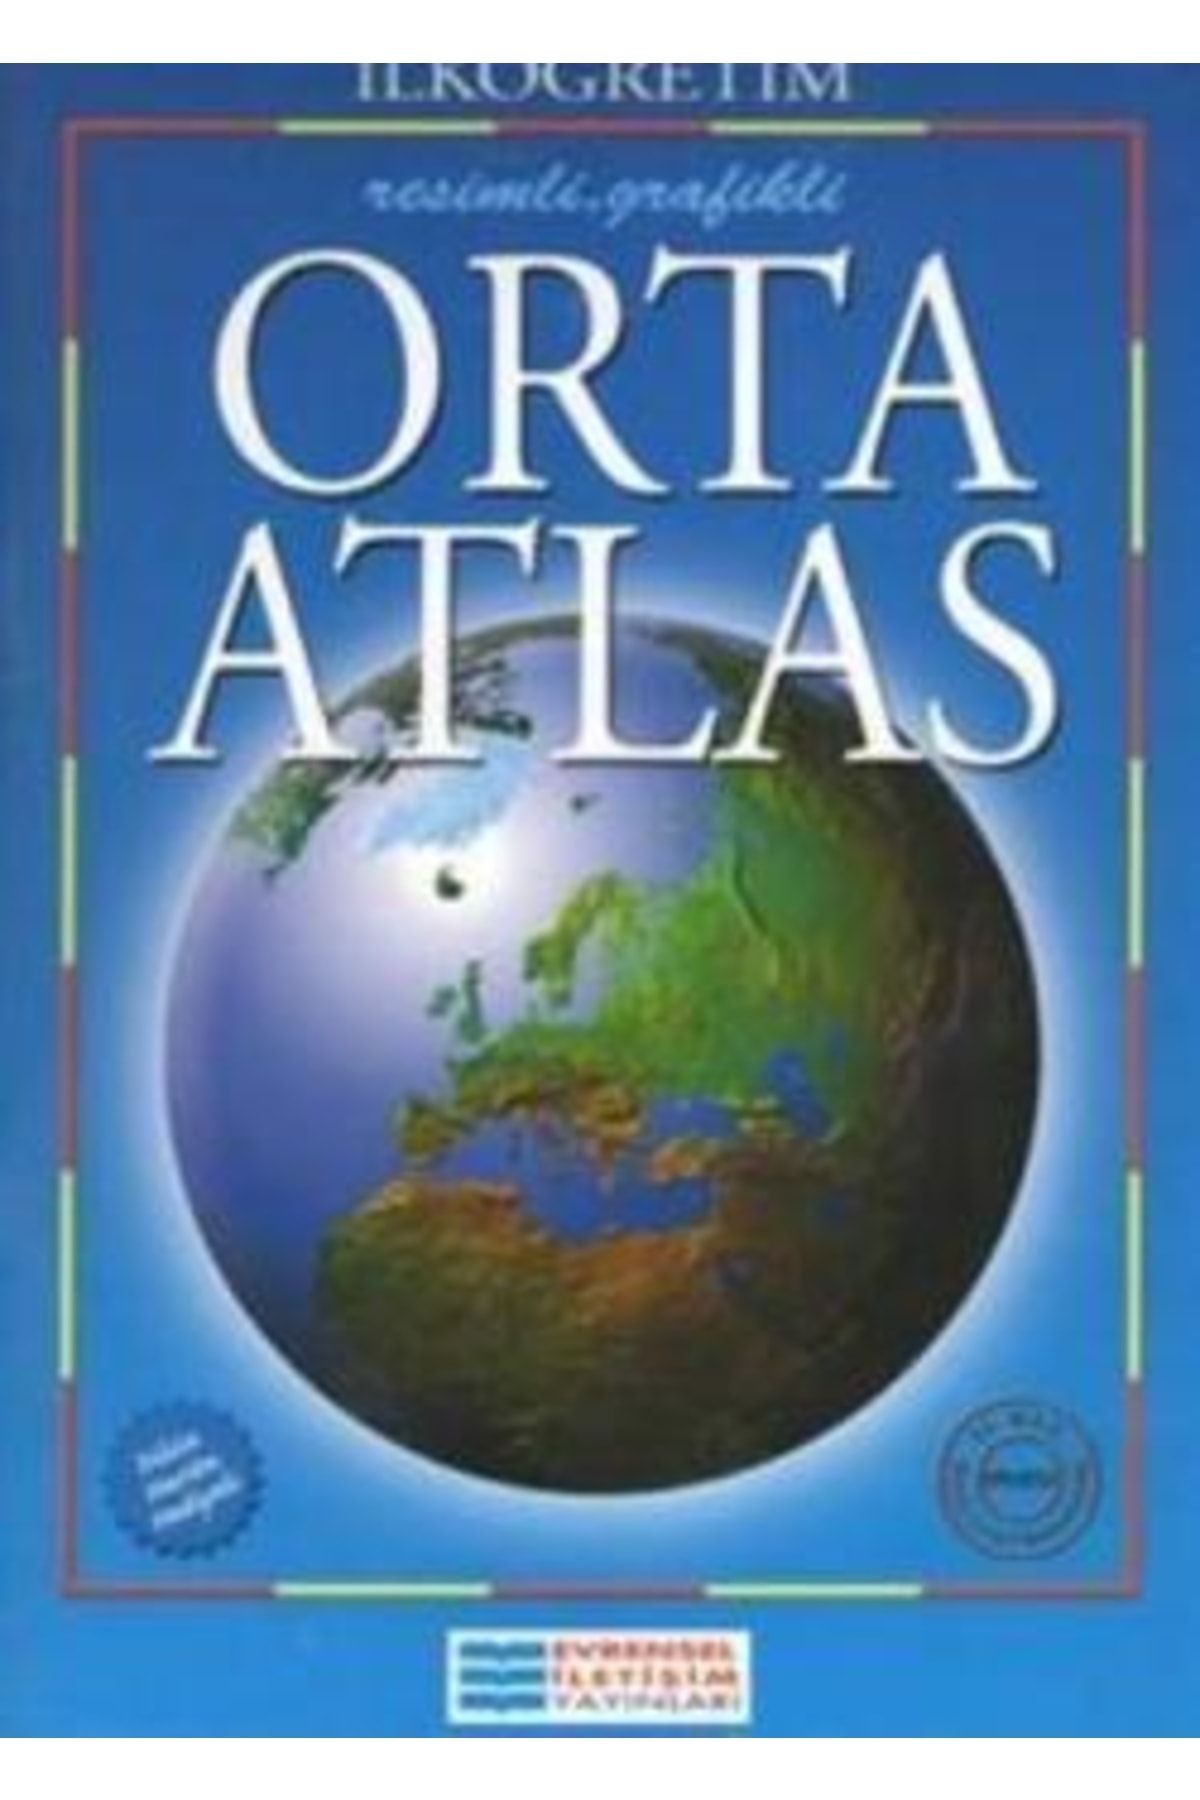 Genel Markalar İlköğretim Orta Atlas kitabı - Evrensel Kolektif - Evrensel İletişim Yayınları